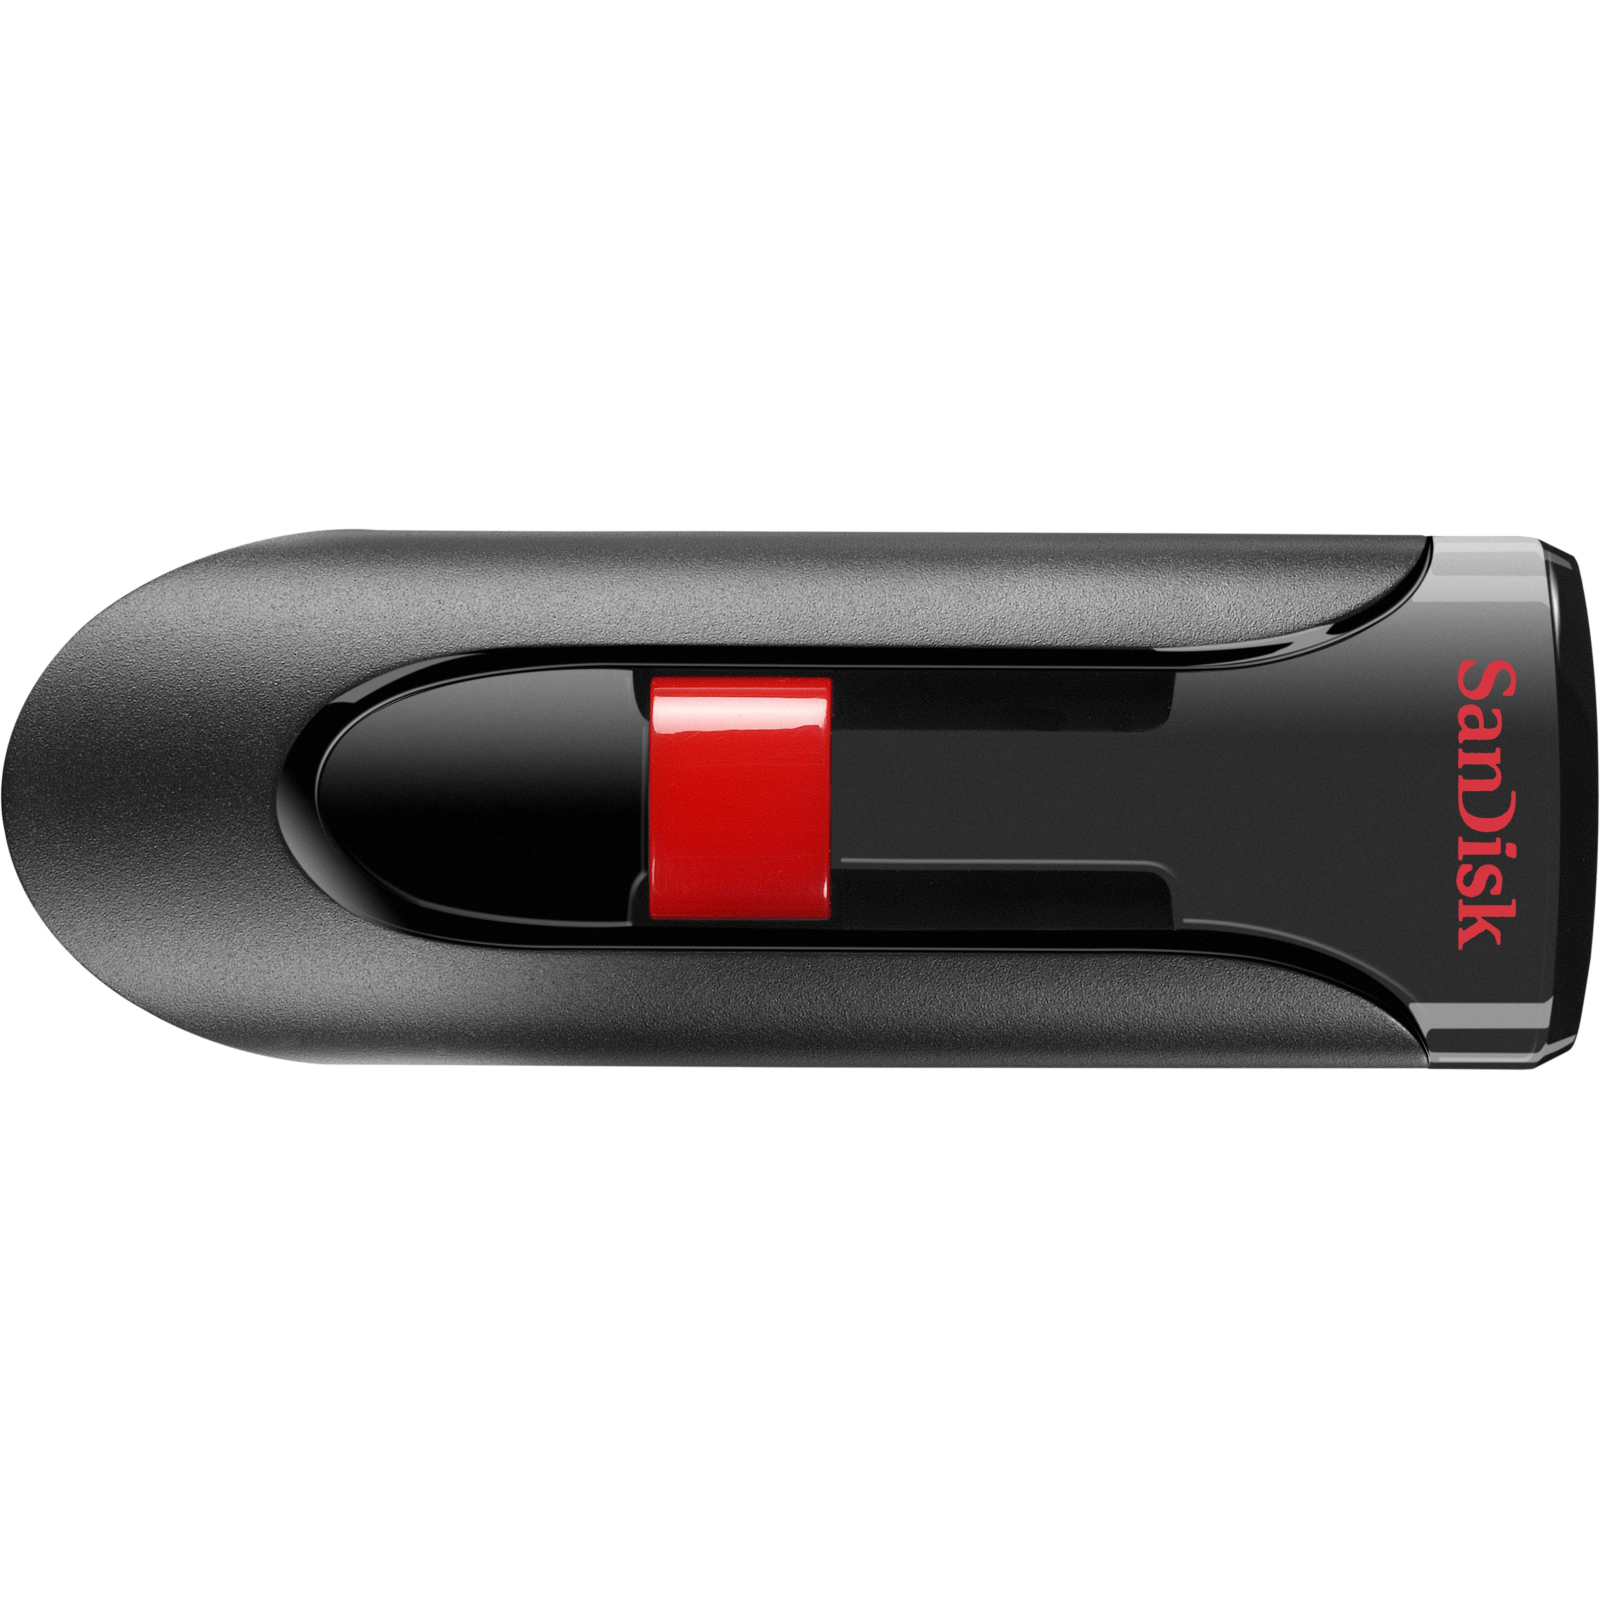 USB флеш накопитель SanDisk 256GB Cruzer Glide Black USB 3.0 (SDCZ600-256G-G35)